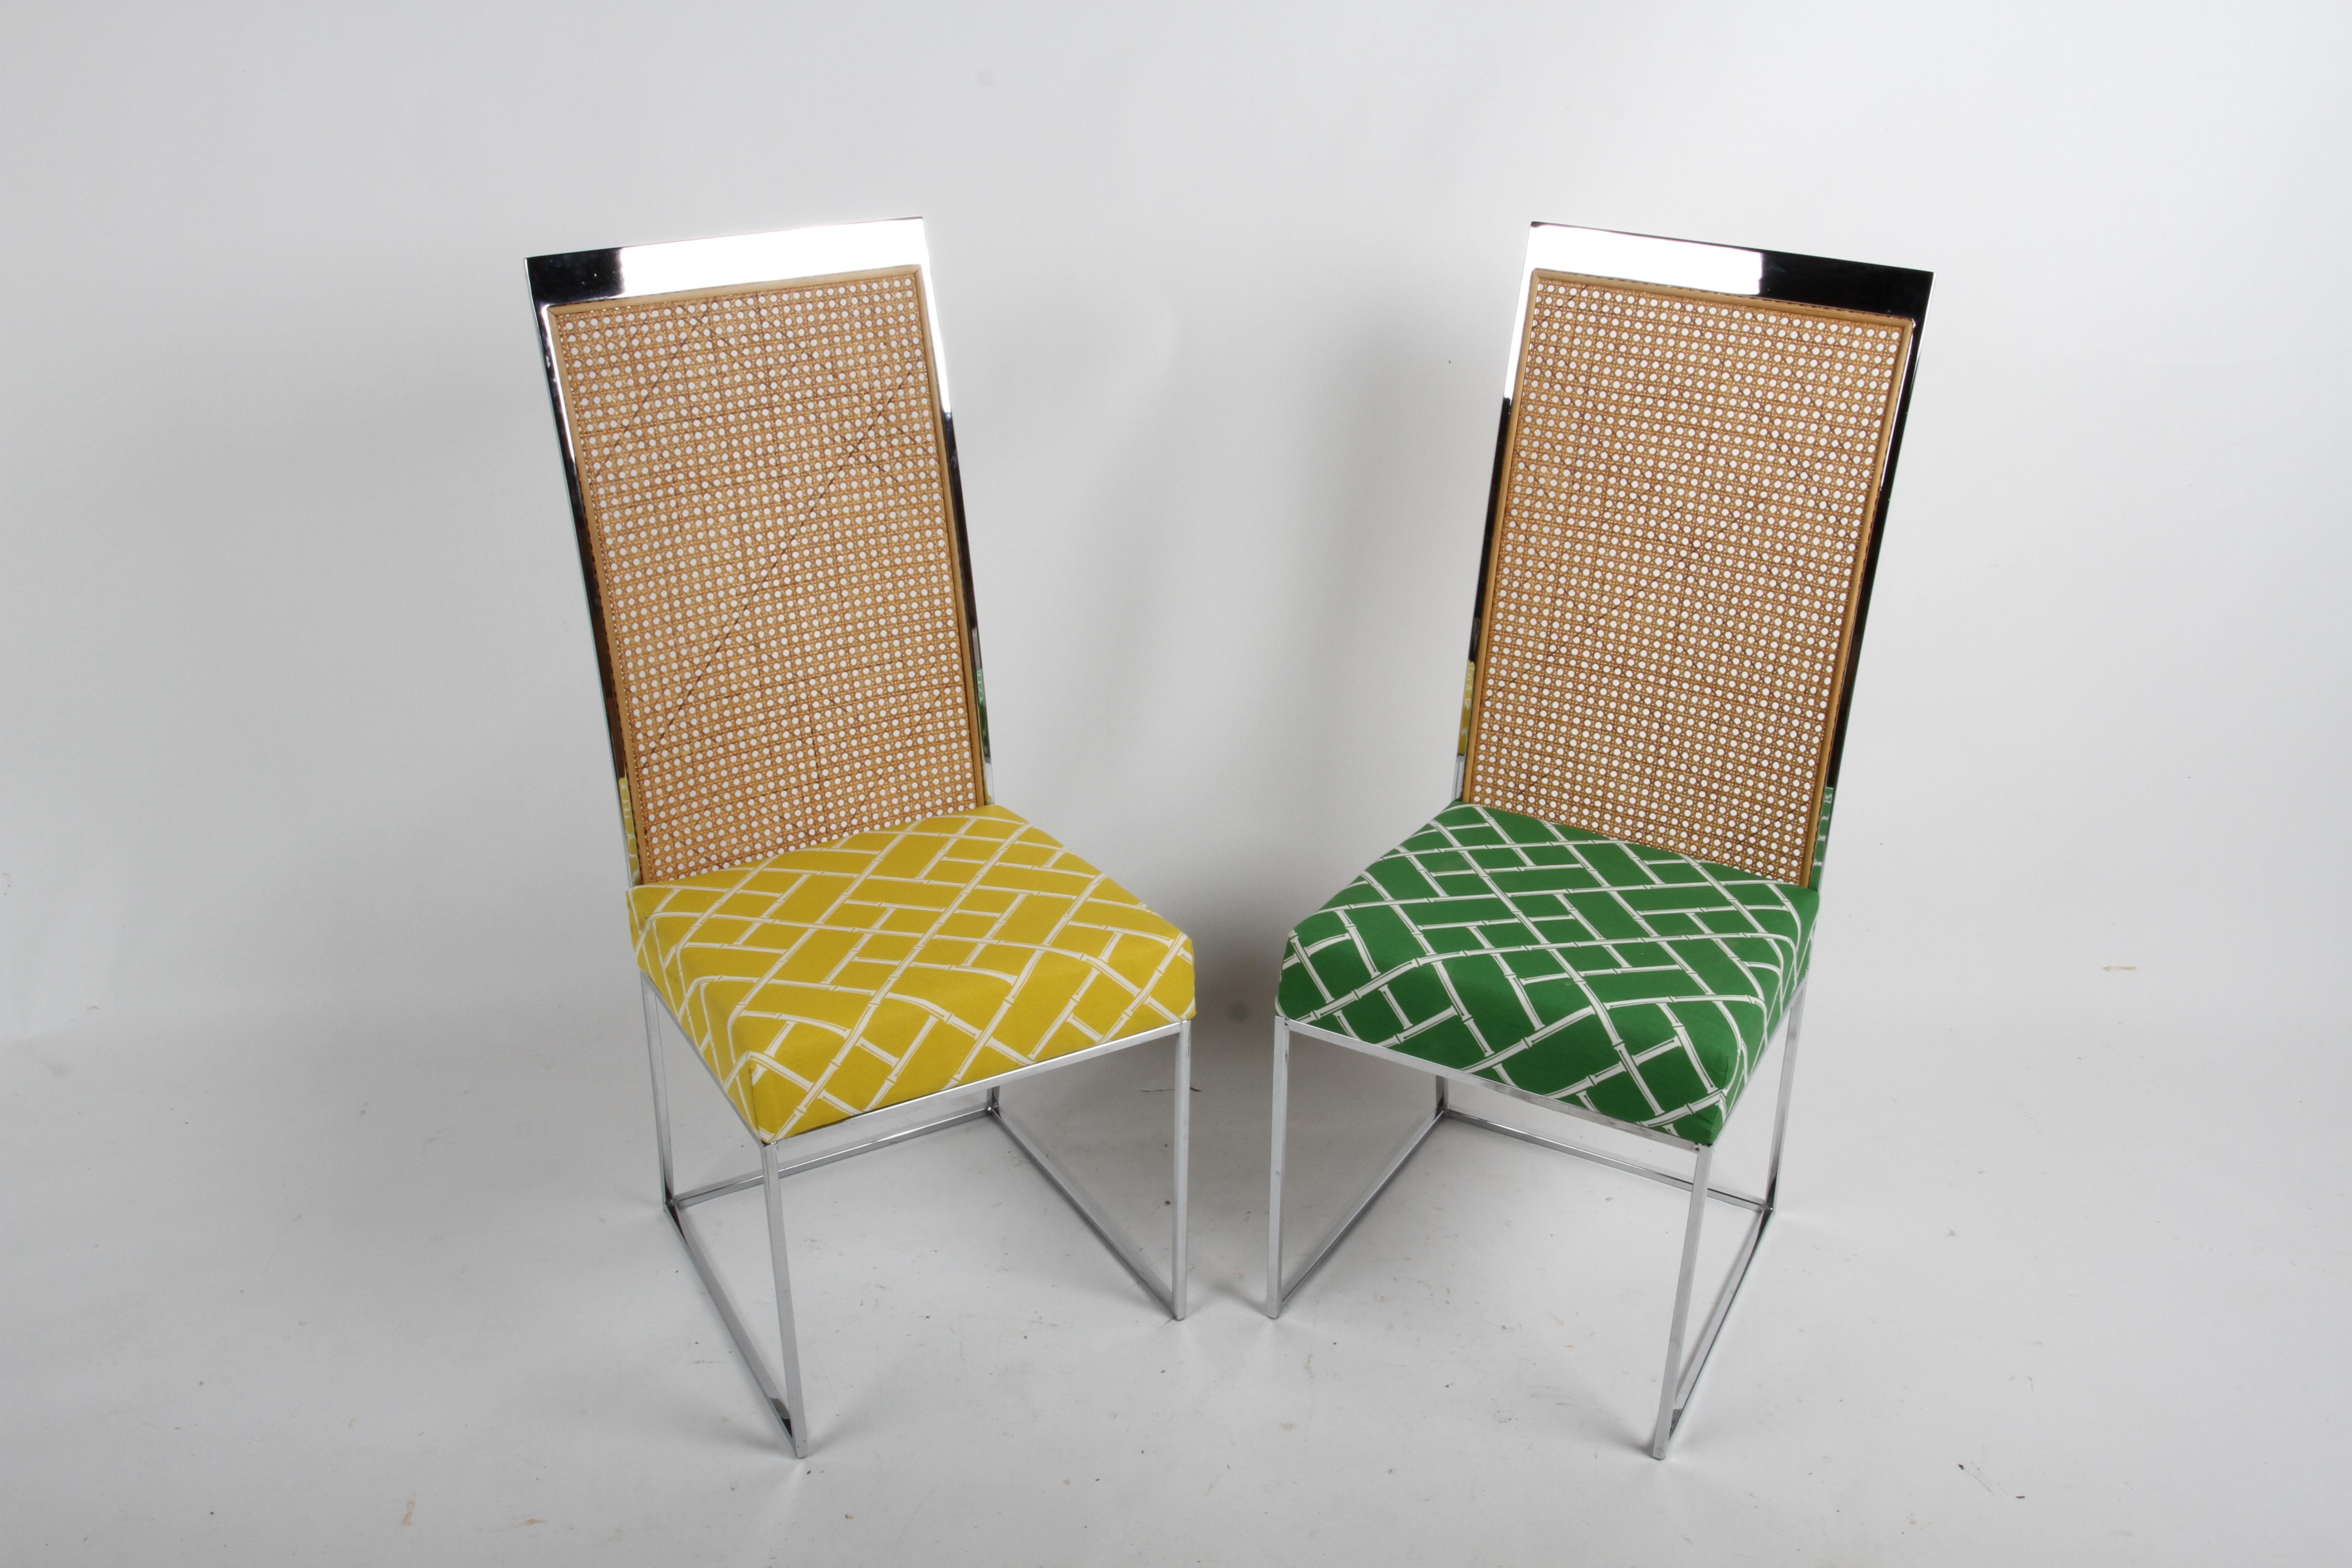 Ensemble de huit chaises de salle à manger chromées et à dossier en rotin, conçues par Milo Baughman pour Thayer Coggin vers les années 1970. Chaque chaise est dotée d'une fine structure chromée simpliste, d'un dossier haut en rotin et de coussins